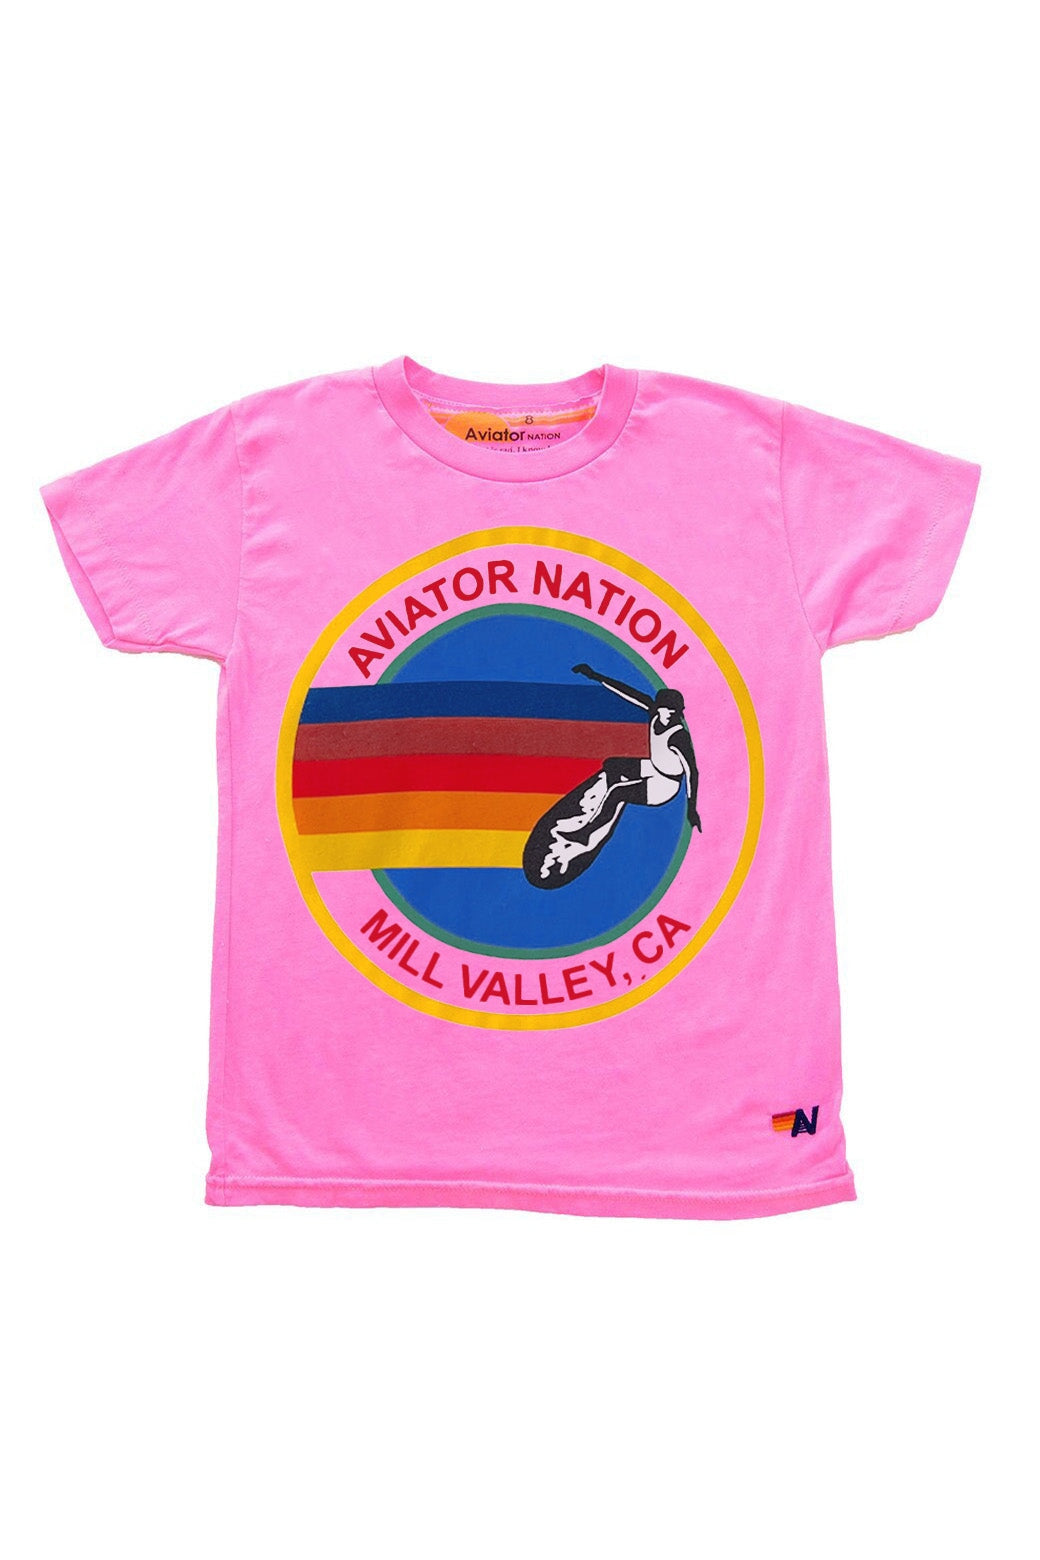 KID'S AVIATOR NATION MILL VALLEY TEE - NEON PINK Kid's Tee Aviator Nation 